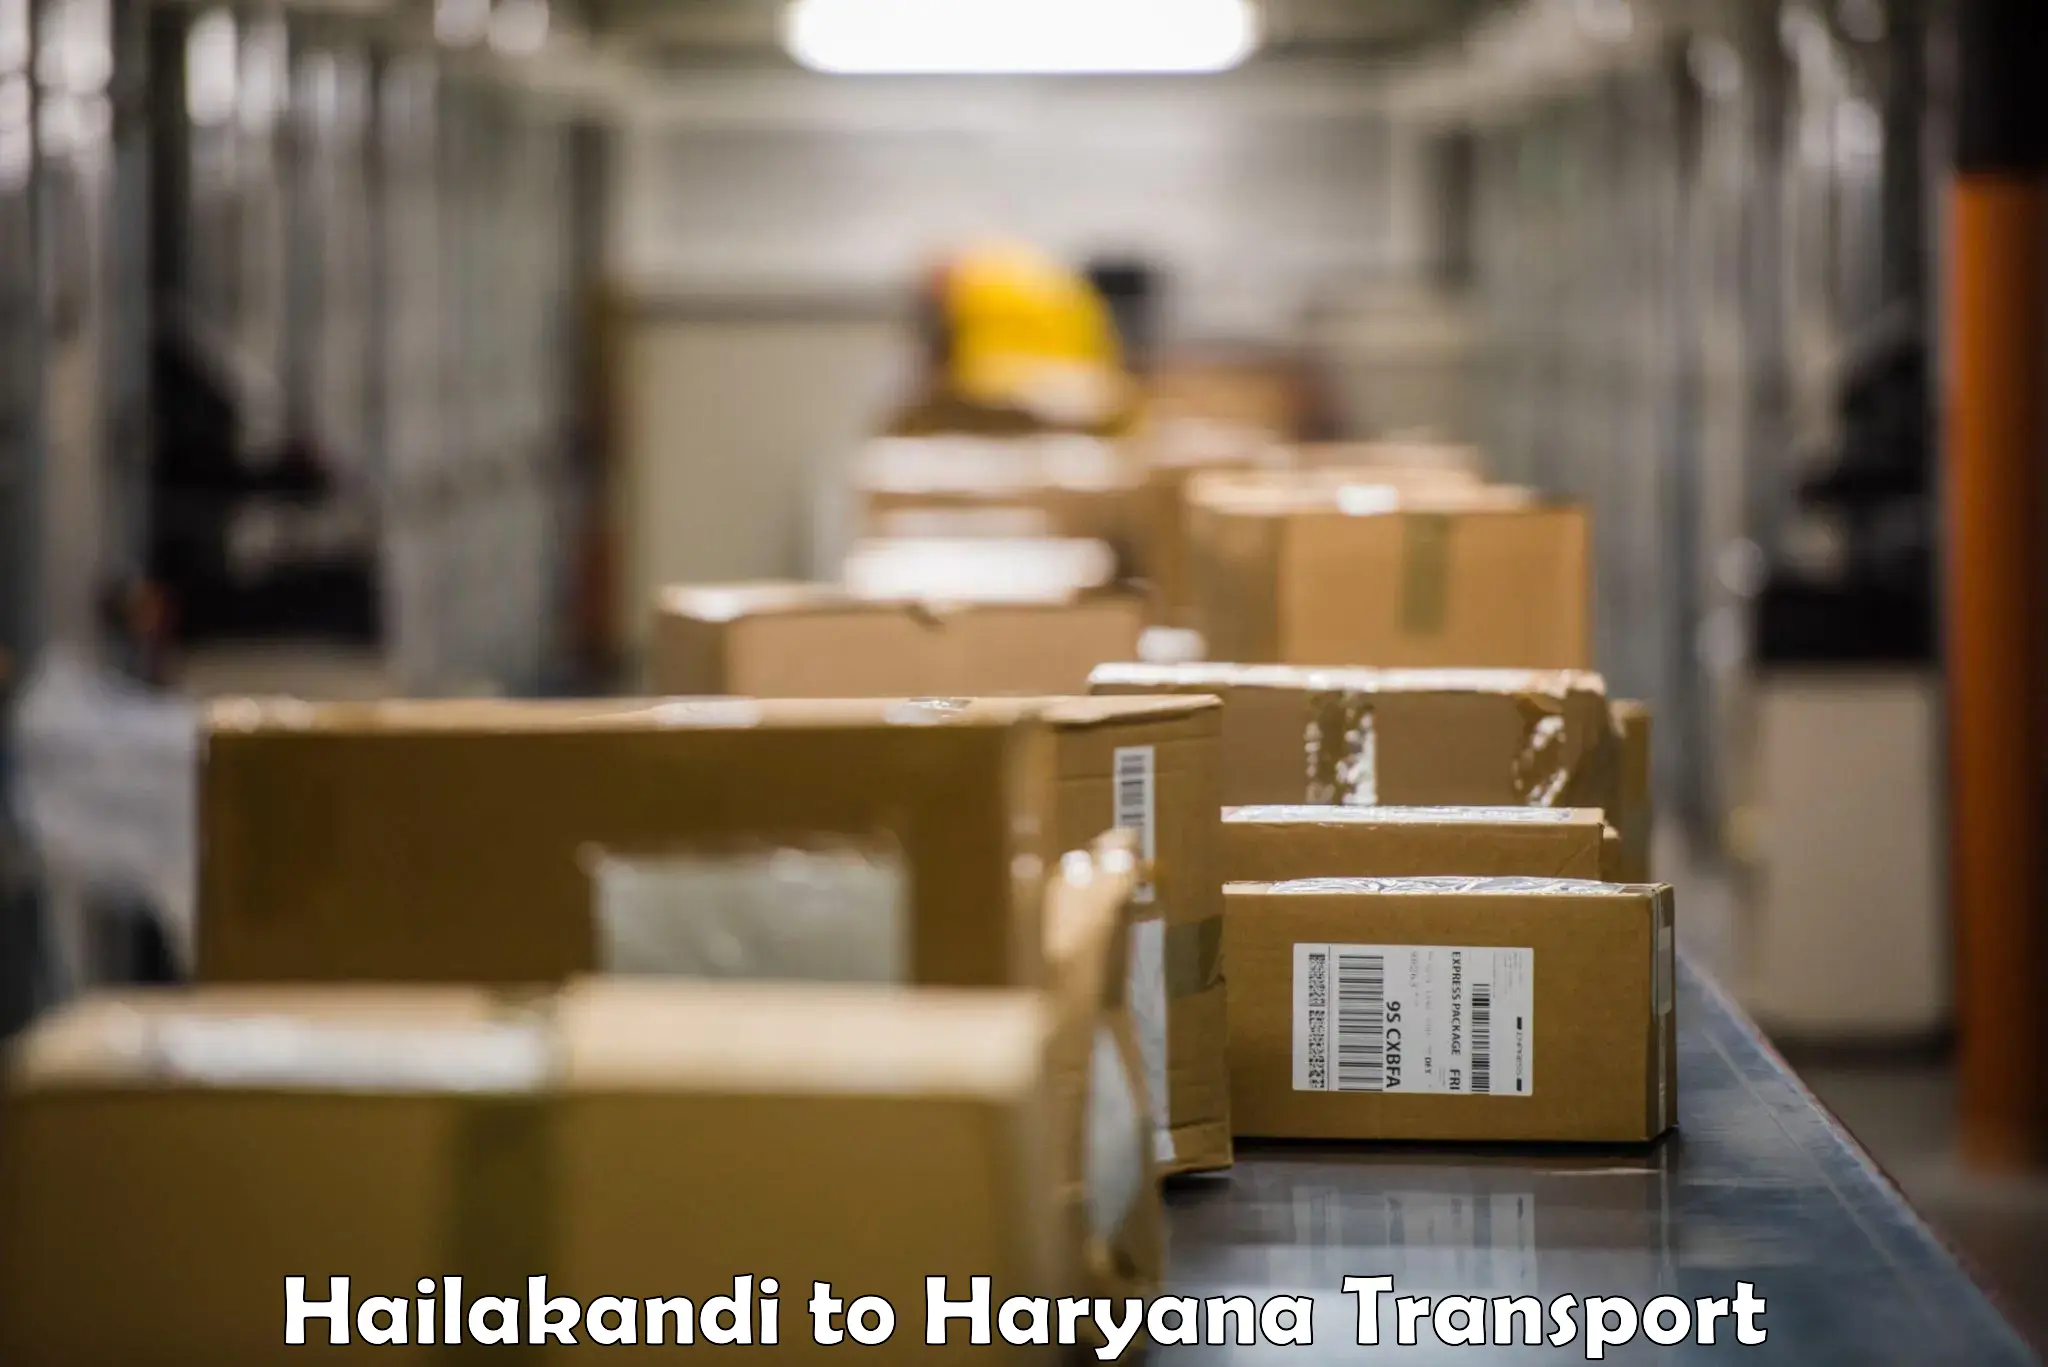 Luggage transport services Hailakandi to Ellenabad